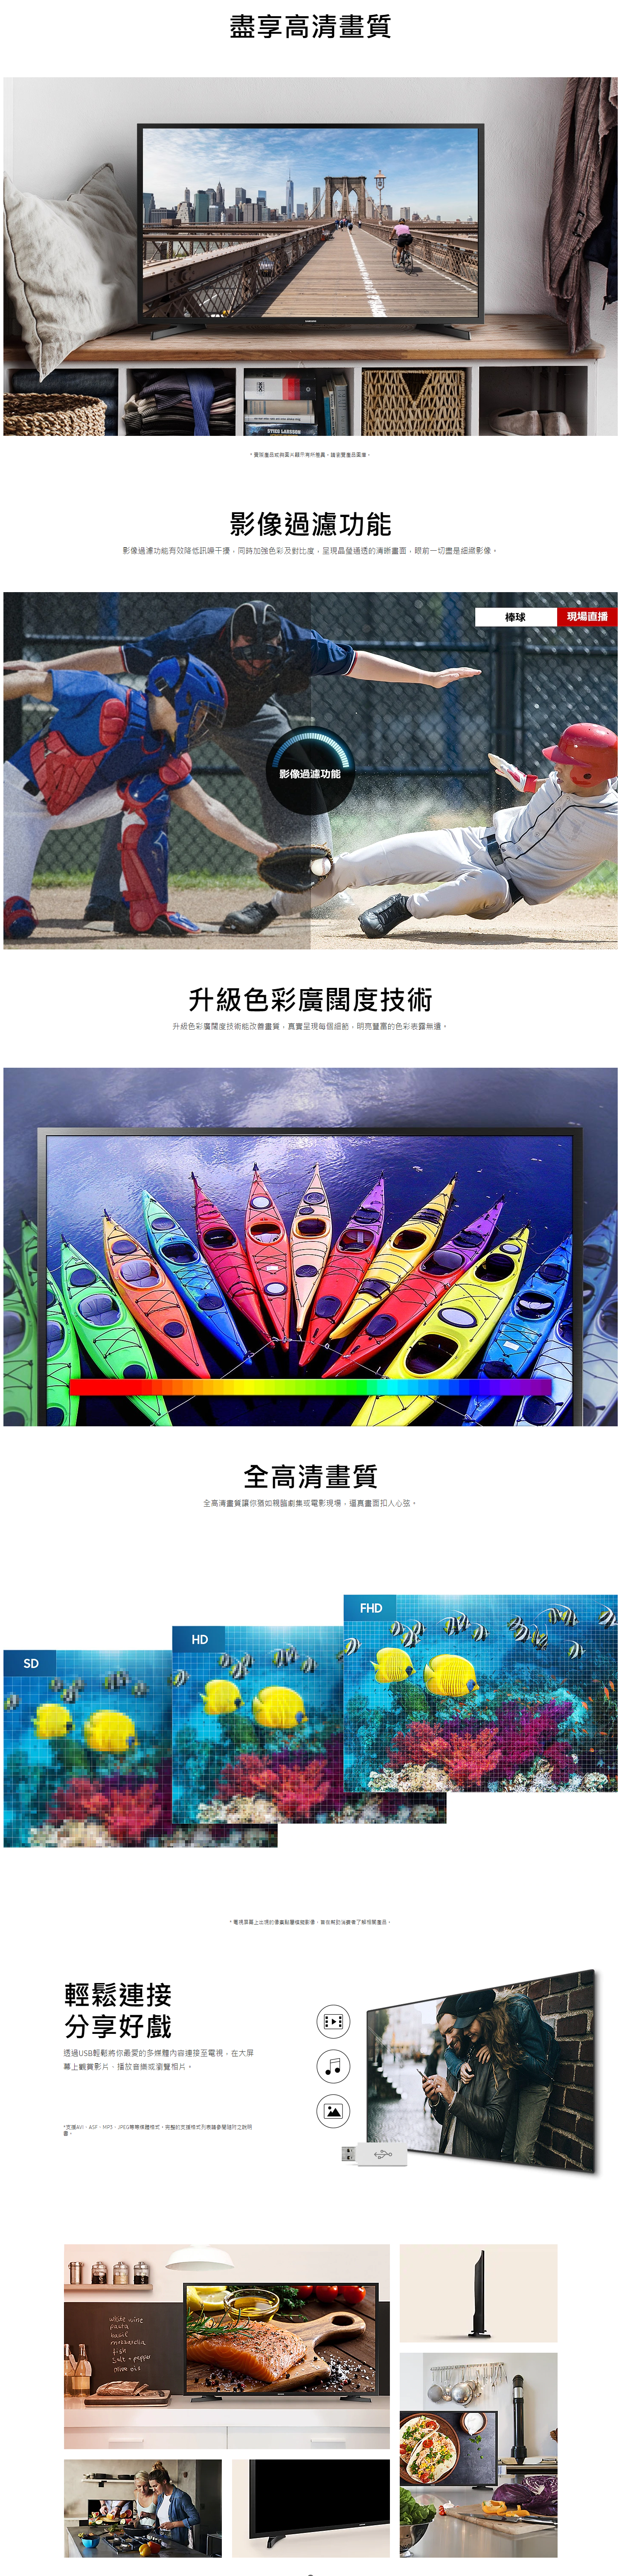 【已停產】Samsung 三星 UA32N5000AJ 32吋 FHD 電視